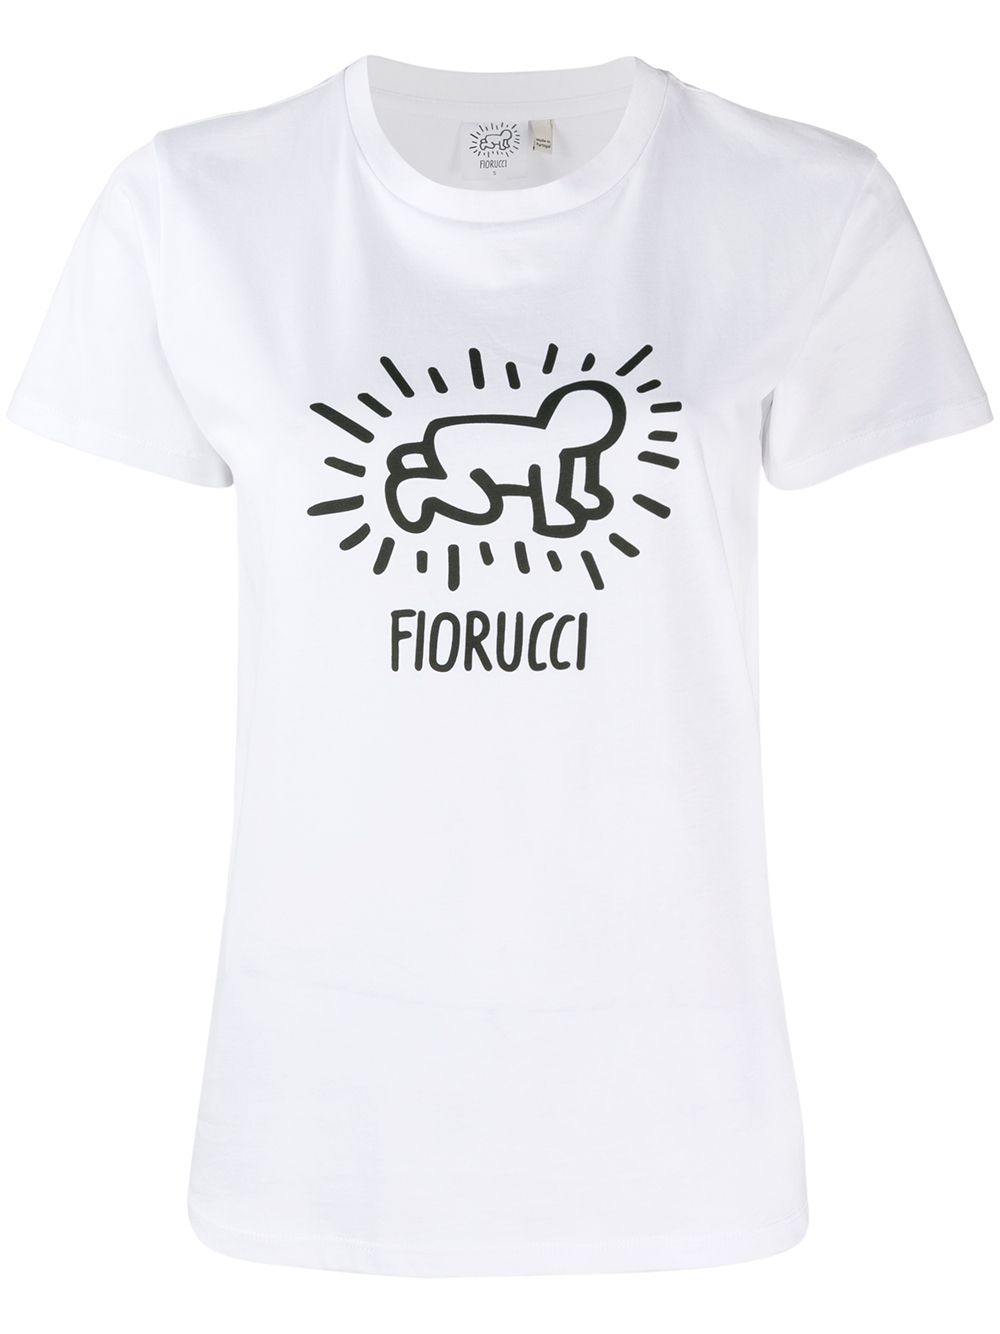 фото Fiorucci рубашка Keith Haring